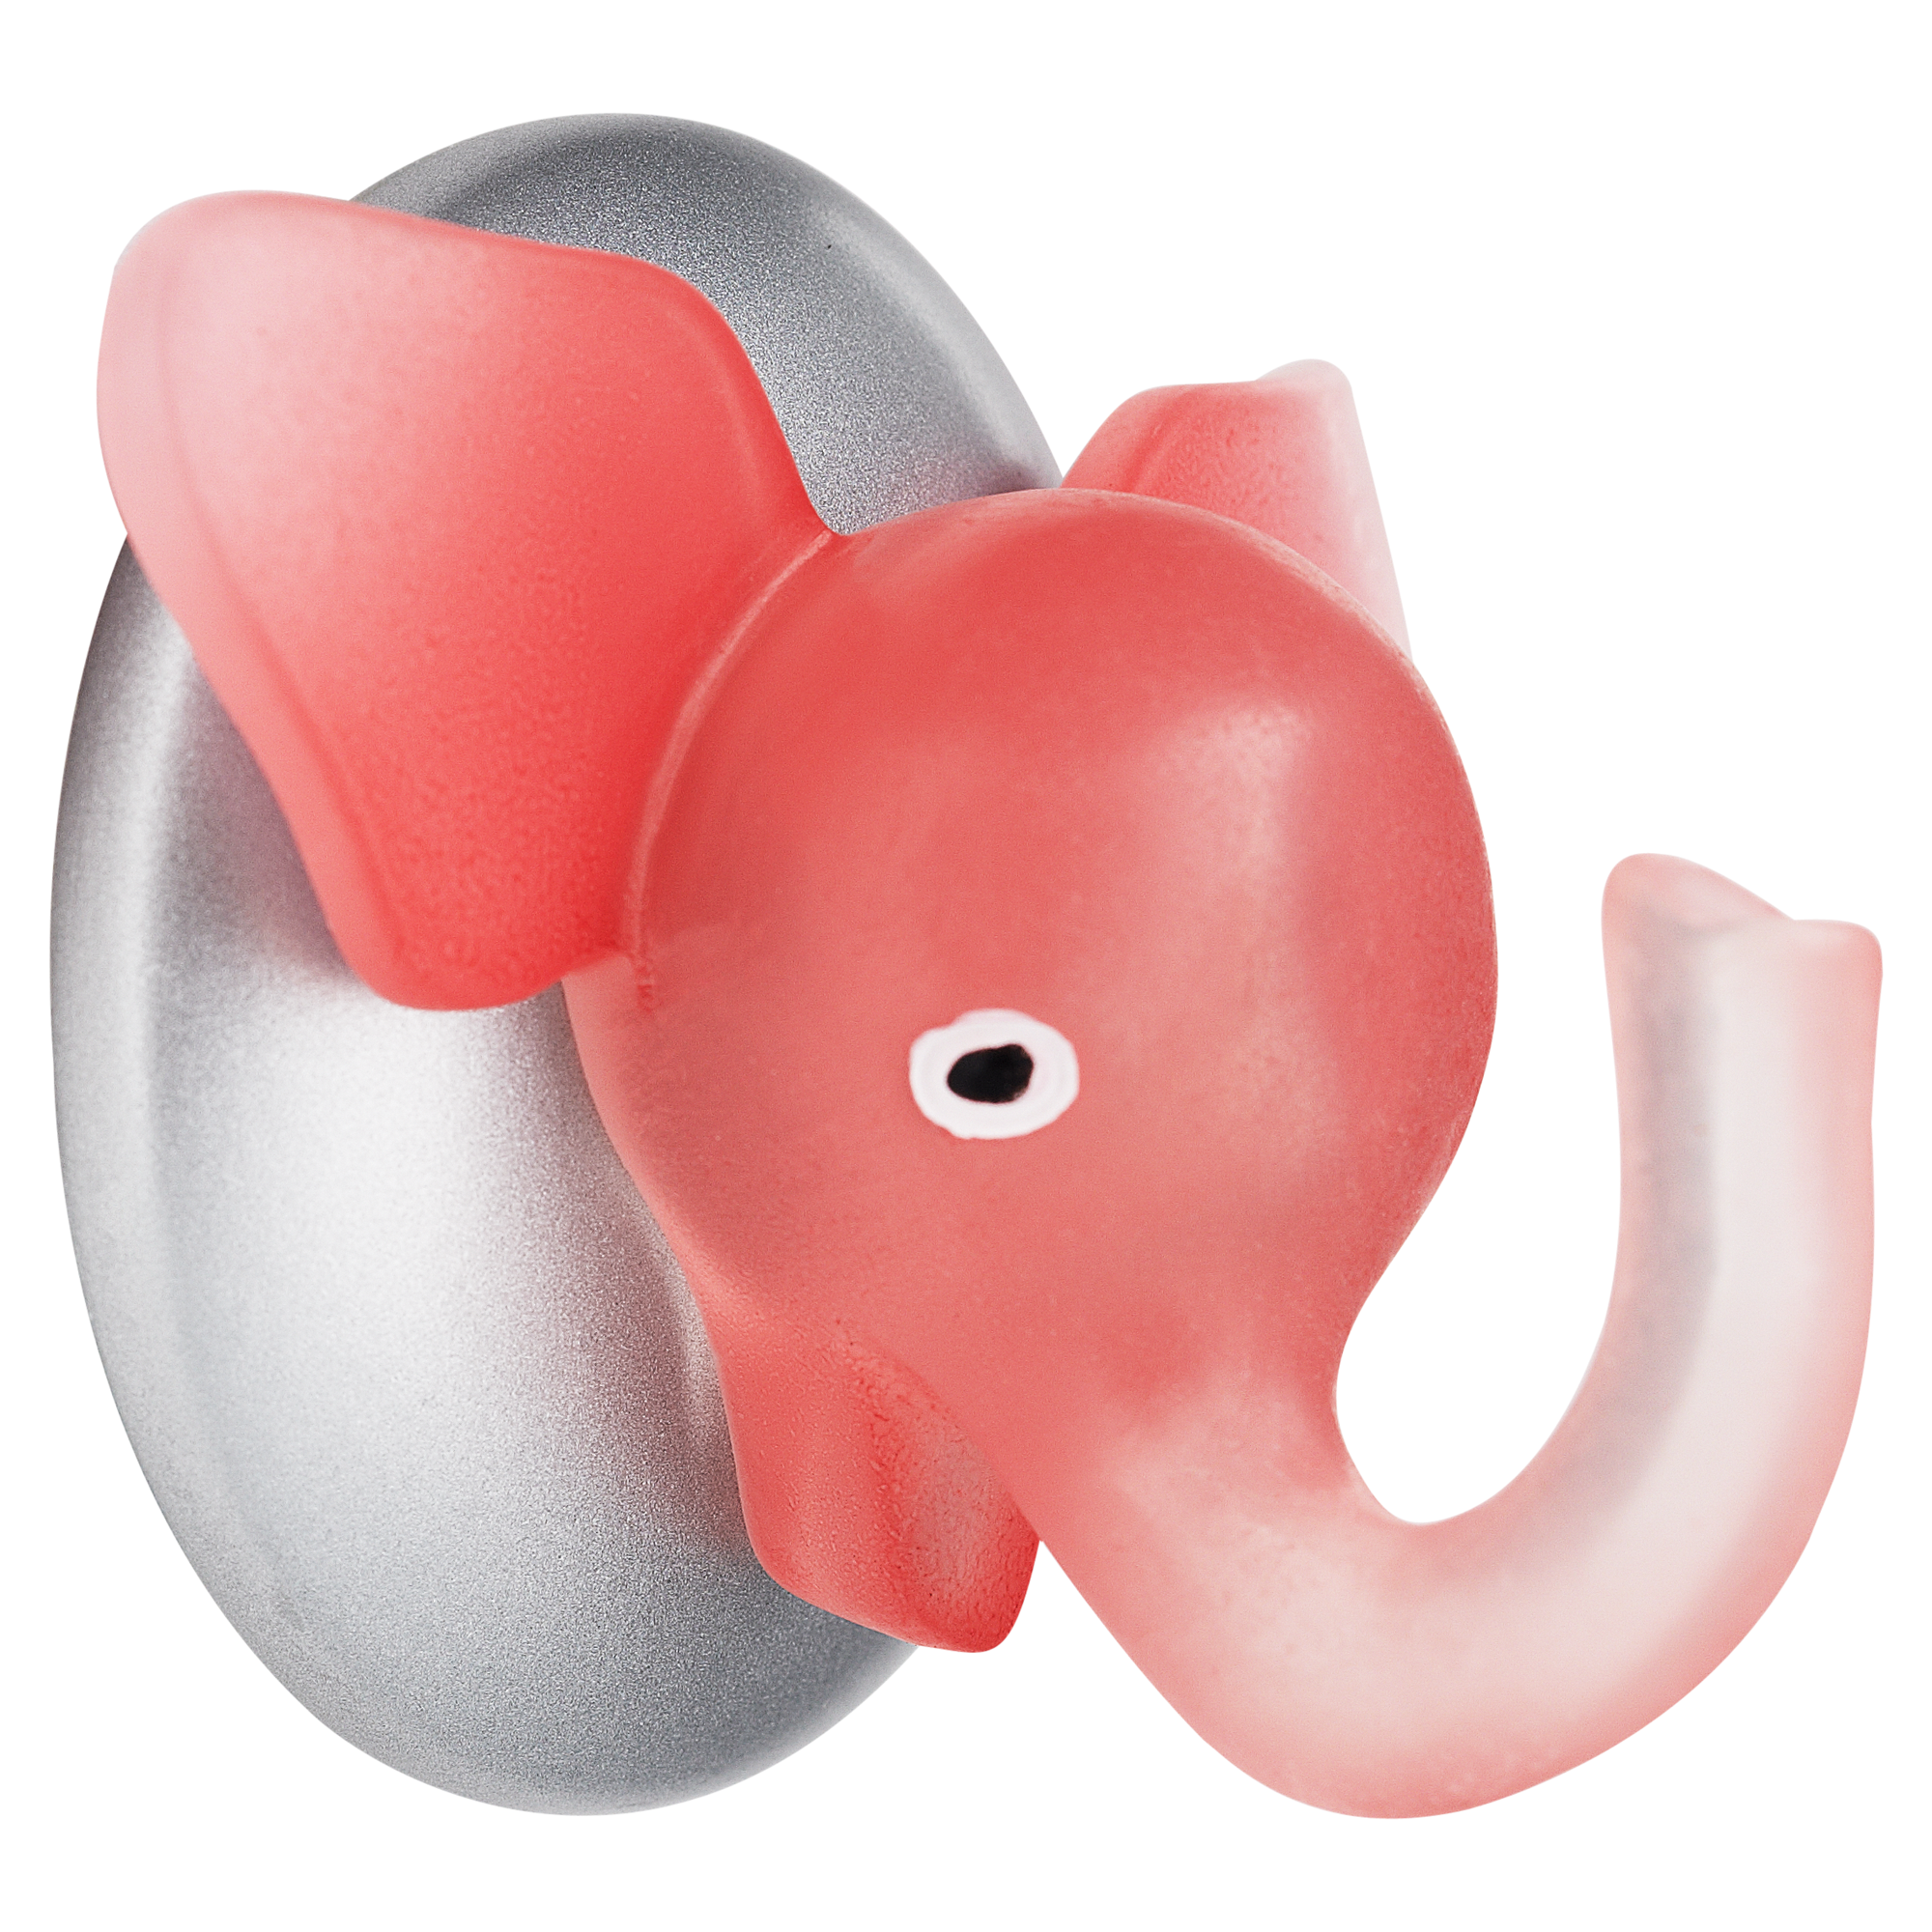 Klebehaken 'Dumbo' pink + product picture